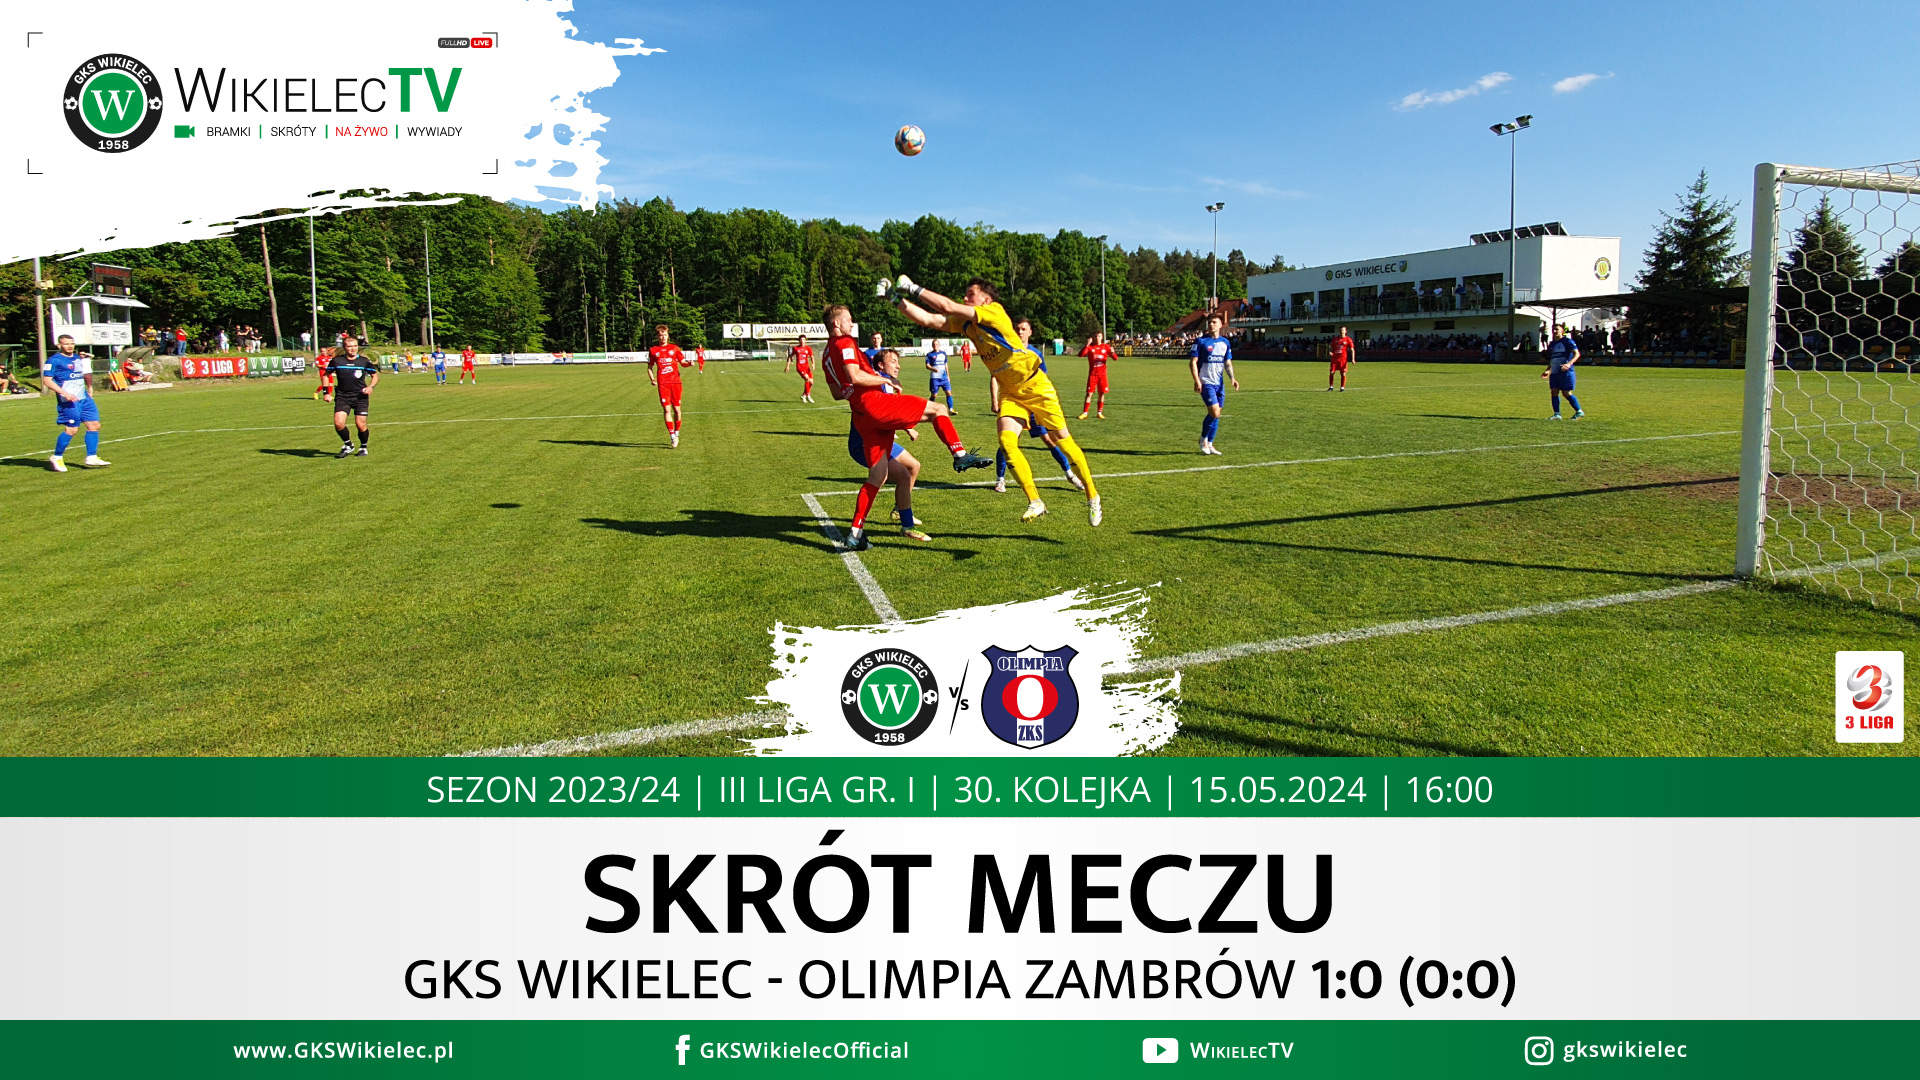 WikielecTV: Skrót meczu GKS Wikielec - Olimpia Zambrów 1:0 (0:0)